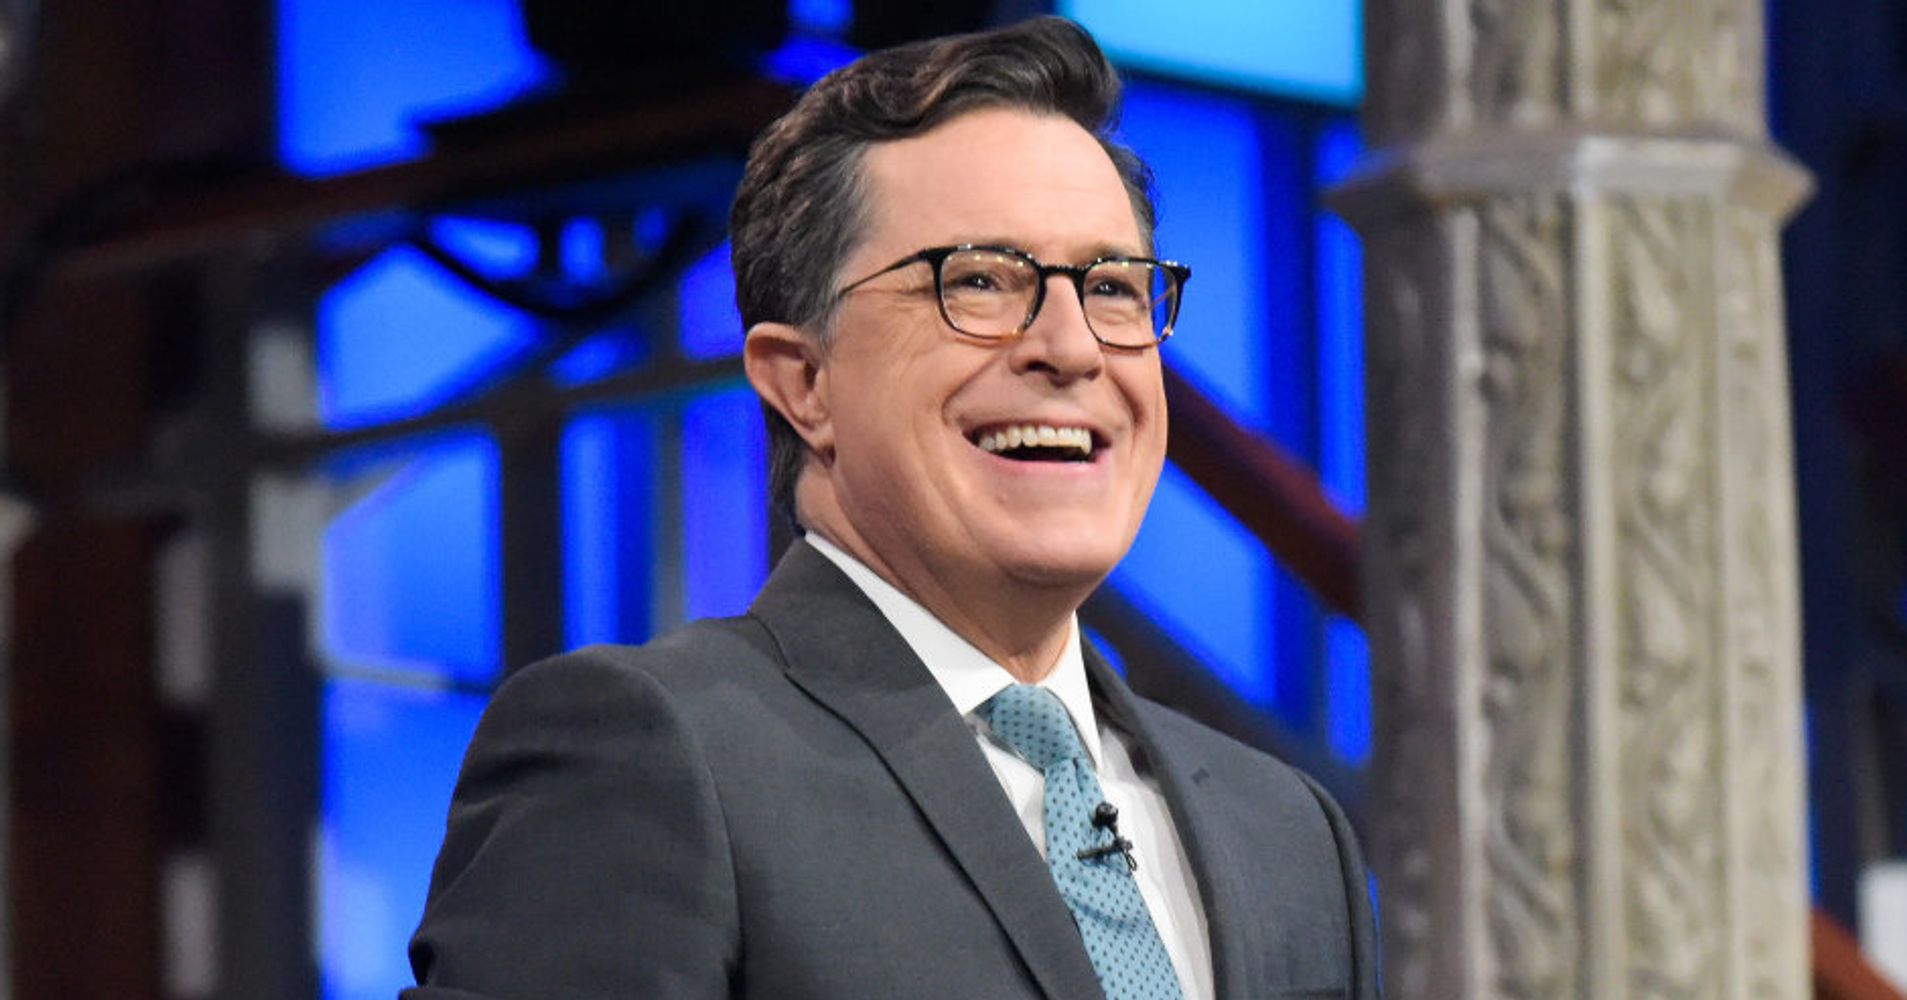 Stephen Colbert Will Host The 2017 Emmy Awards | HuffPost